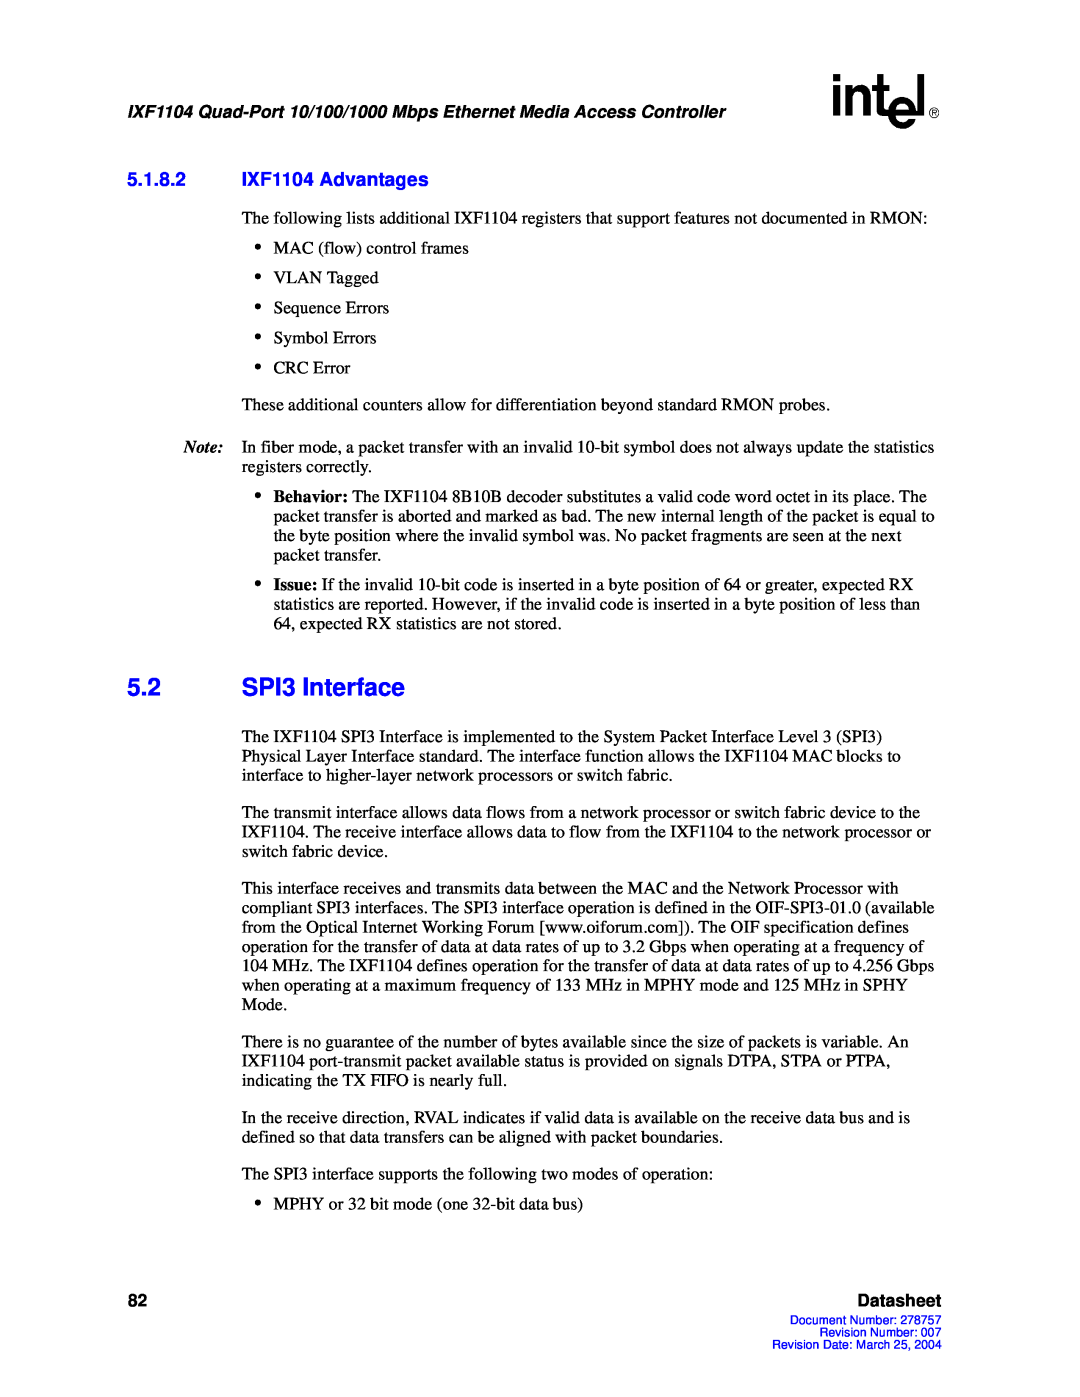 Intel manual 5.2SPI3 Interface, 5.1.8.2IXF1104 Advantages, Datasheet 